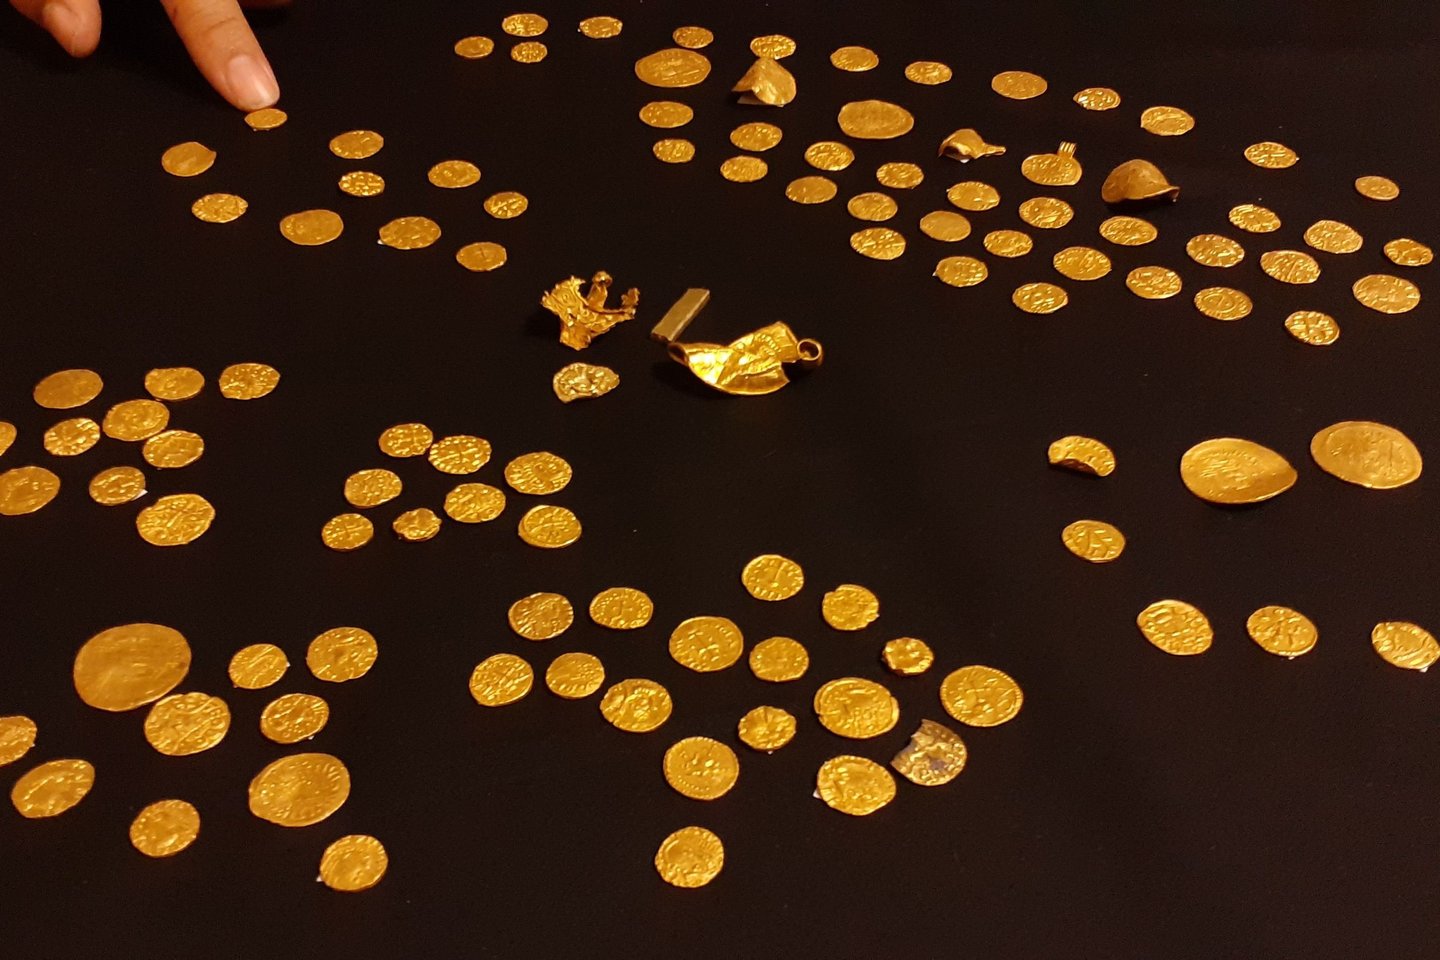  Vakarų Norfolke metalo detektoriaus savininko aptiko didžiausią kada nors surastą anglosaksų lobį – 131 monetą ir keturis aukso dirbinius.<br> Britų muziejaus nuotr.